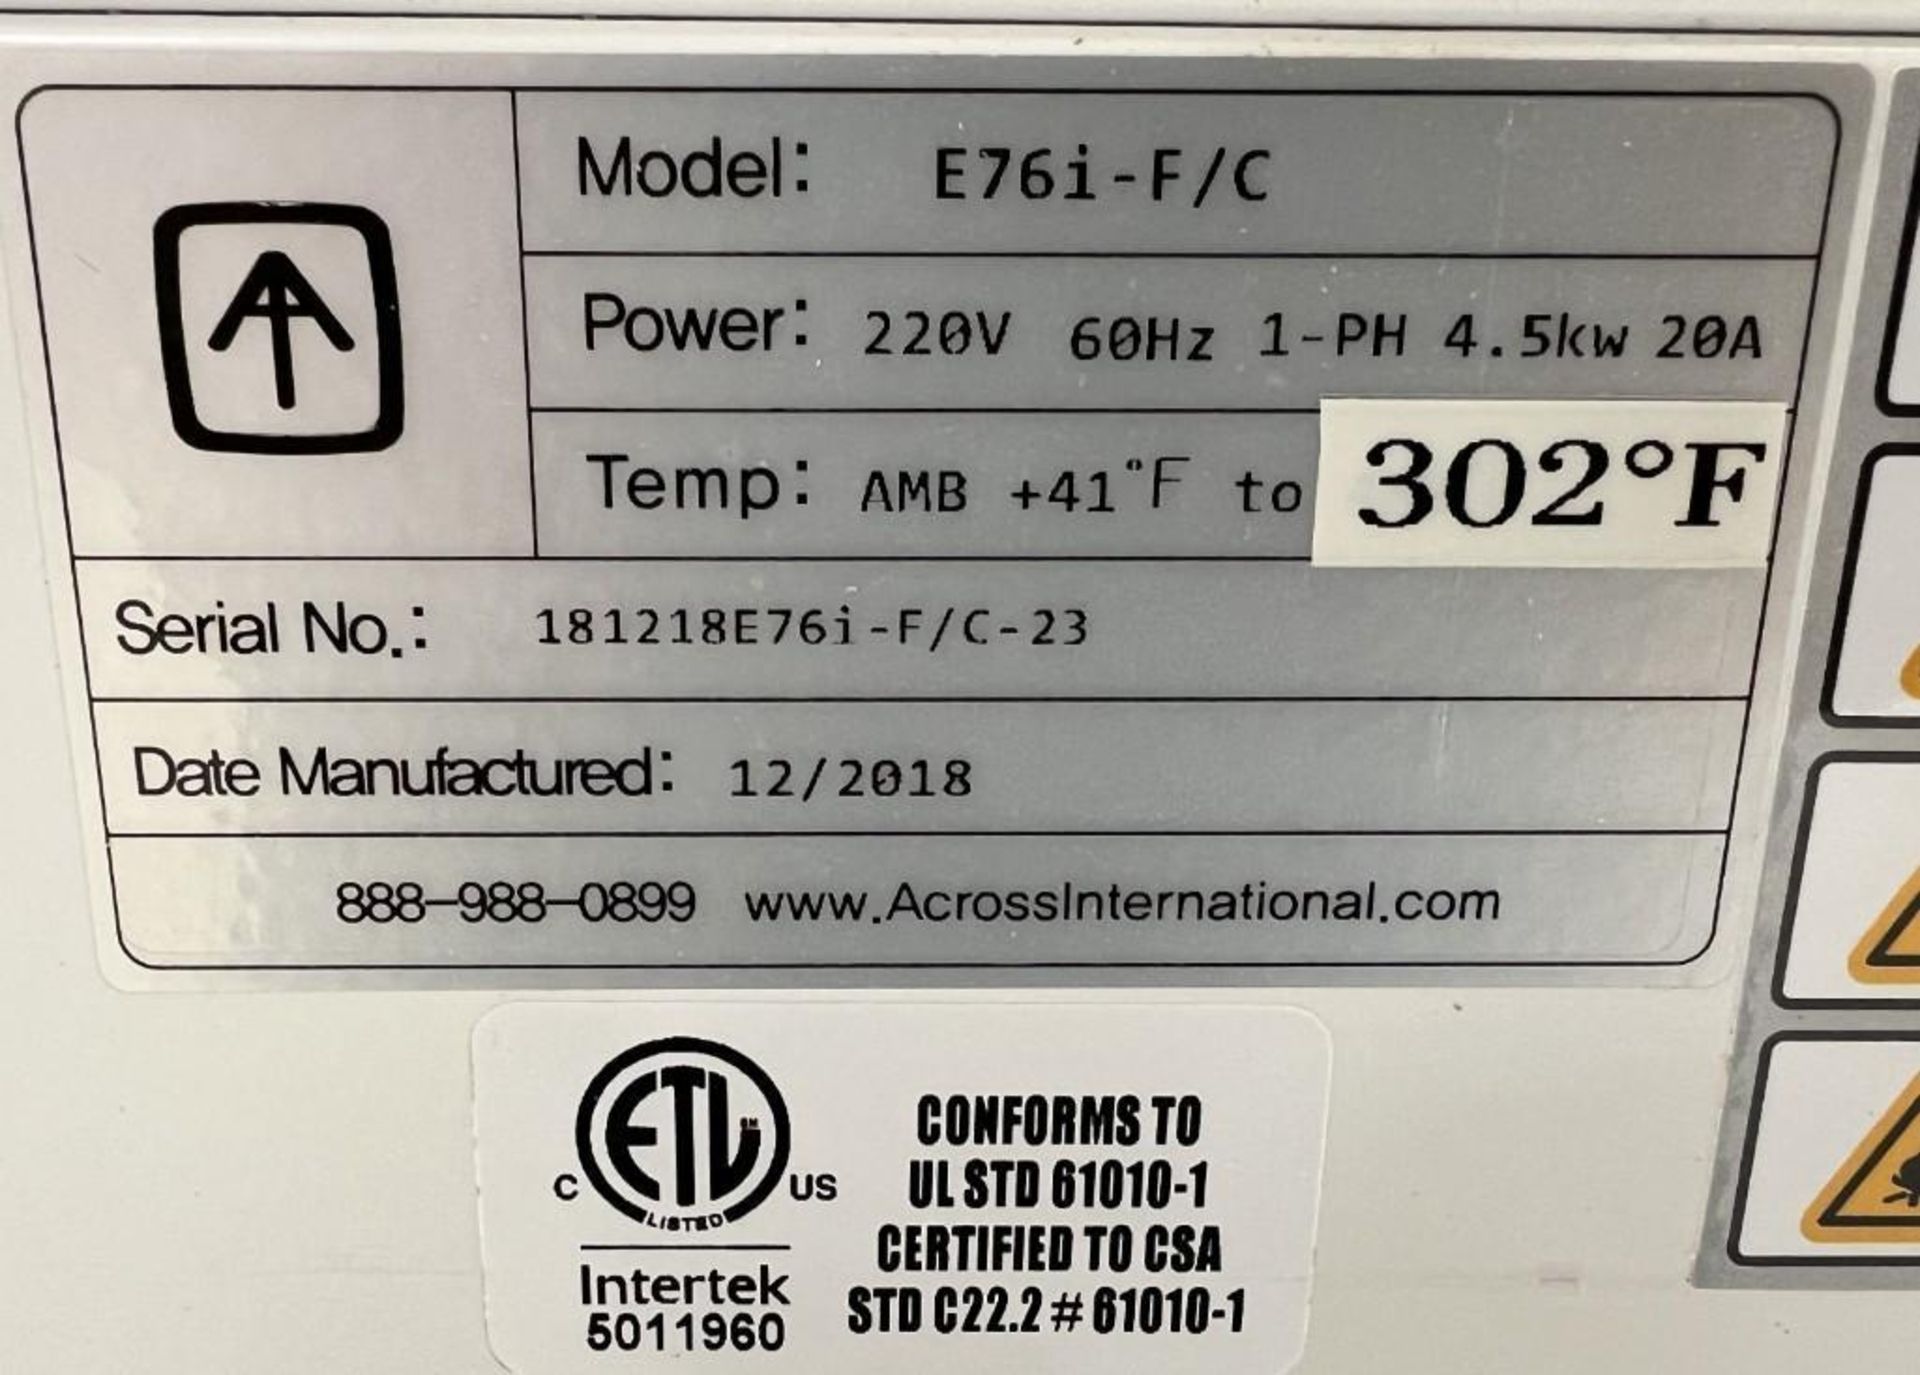 Across International Elite Series Vacuum Oven, Model E76i-F/C, Serial# 181218E76i-F/C-23, Built 12/2 - Image 7 of 7